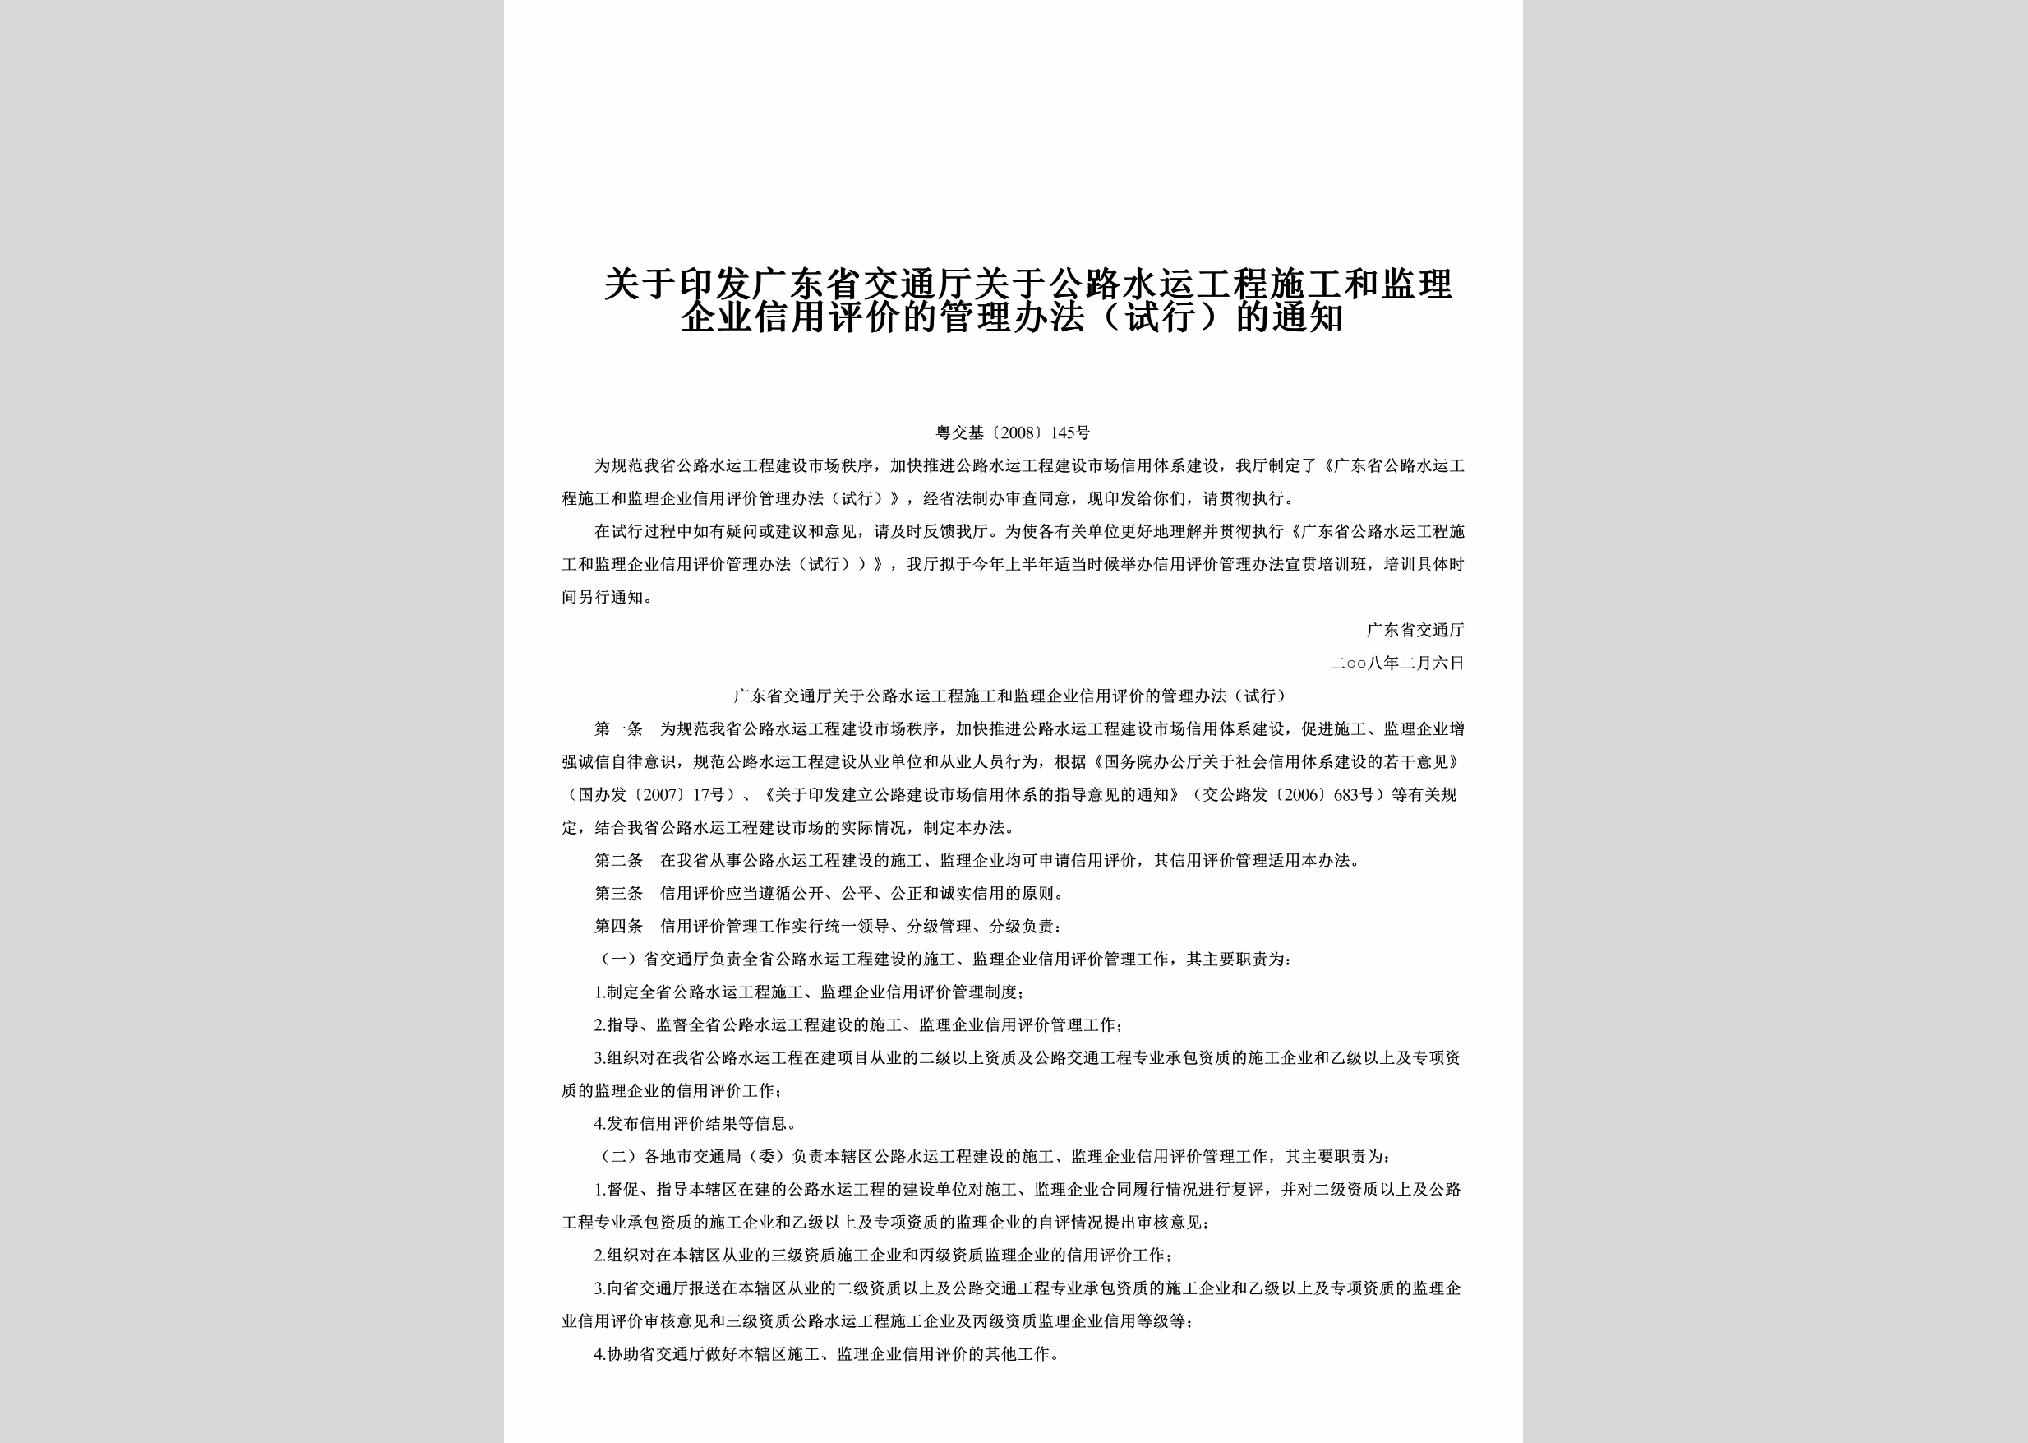 粤交基[2008]145号：关于印发广东省交通厅关于公路水运工程施工和监理企业信用评价的管理办法（试行）的通知